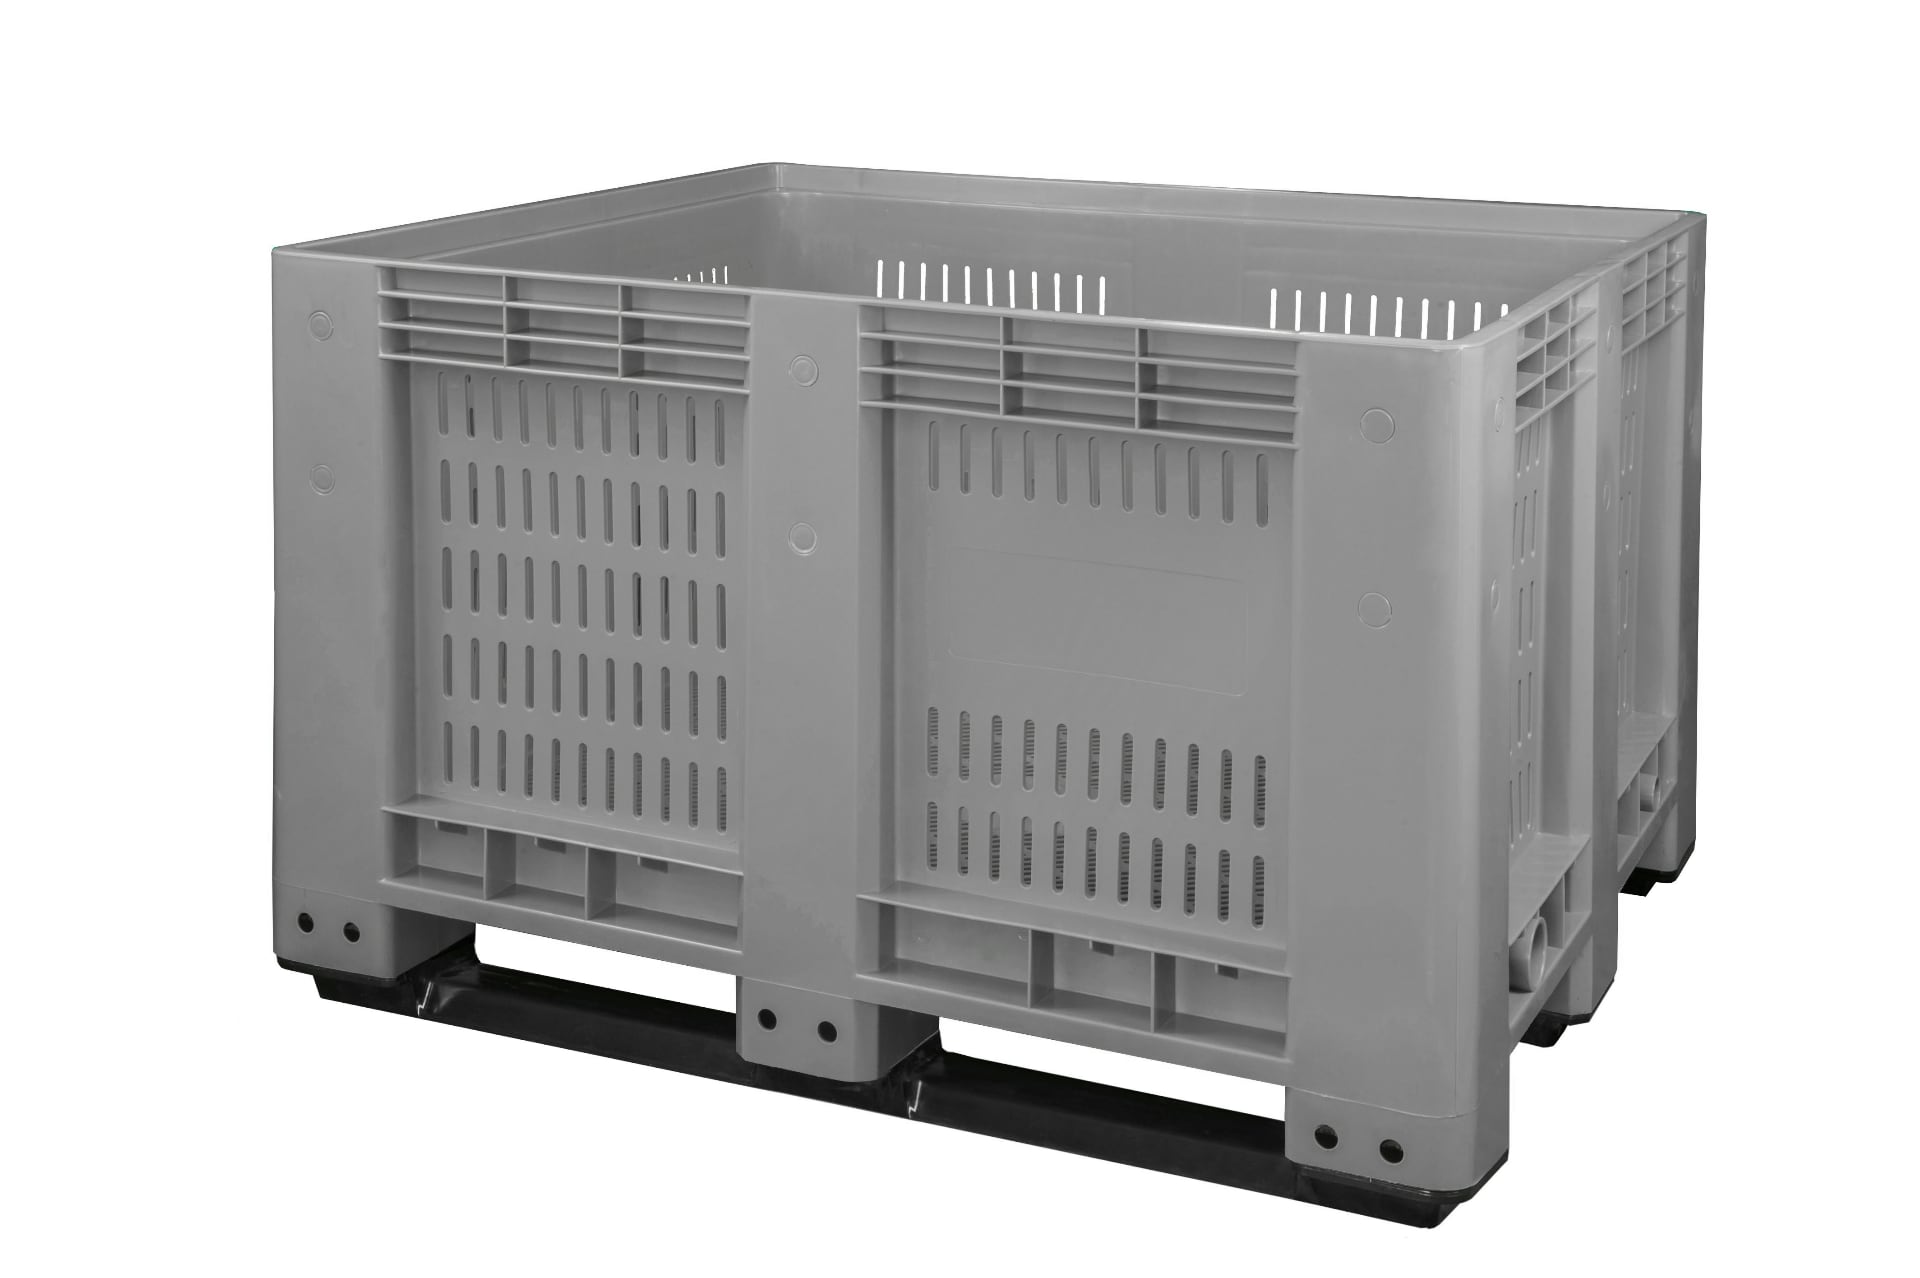 Big-Box 1200 x 1000 mm - Volumen 680 Liter, Kunststoff grau perforiert